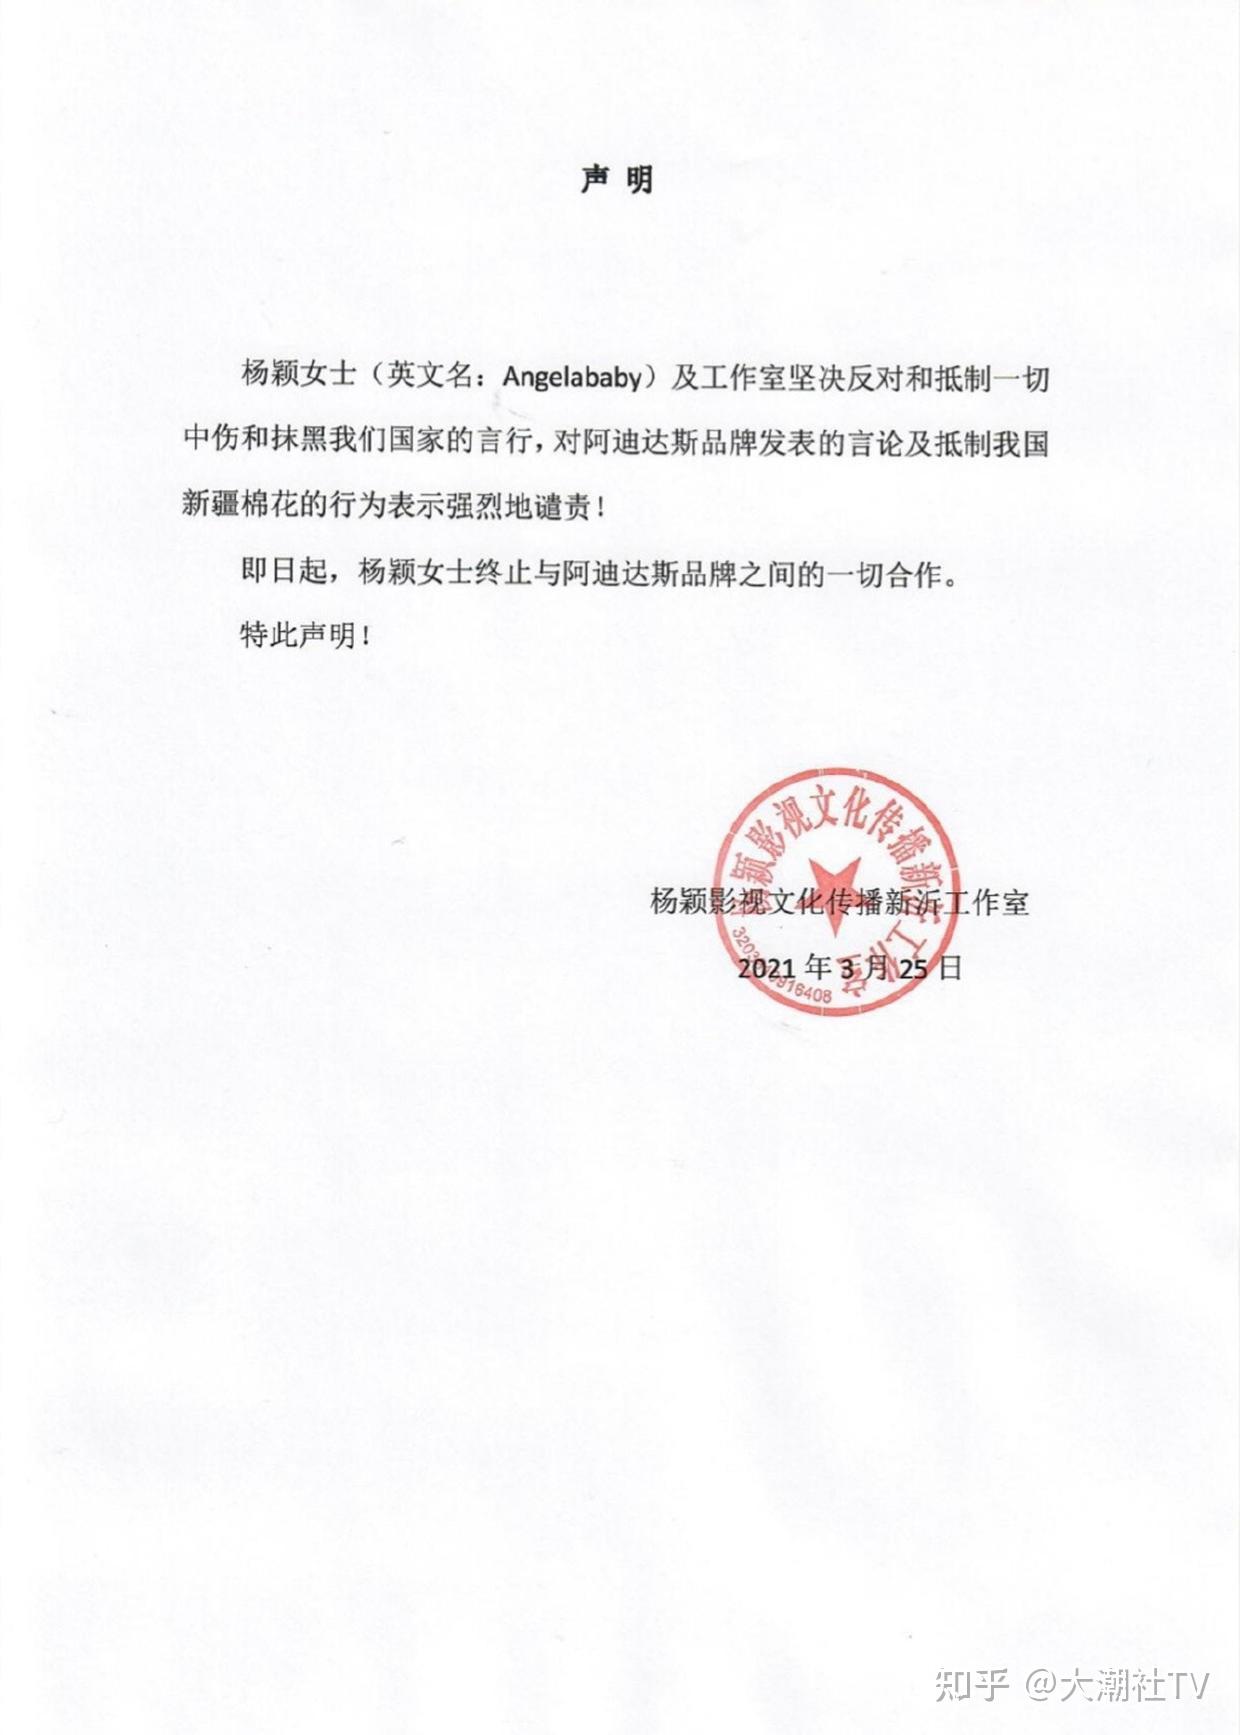 angelababy宣布支持新疆棉花发声明跟adidas终止合作关系